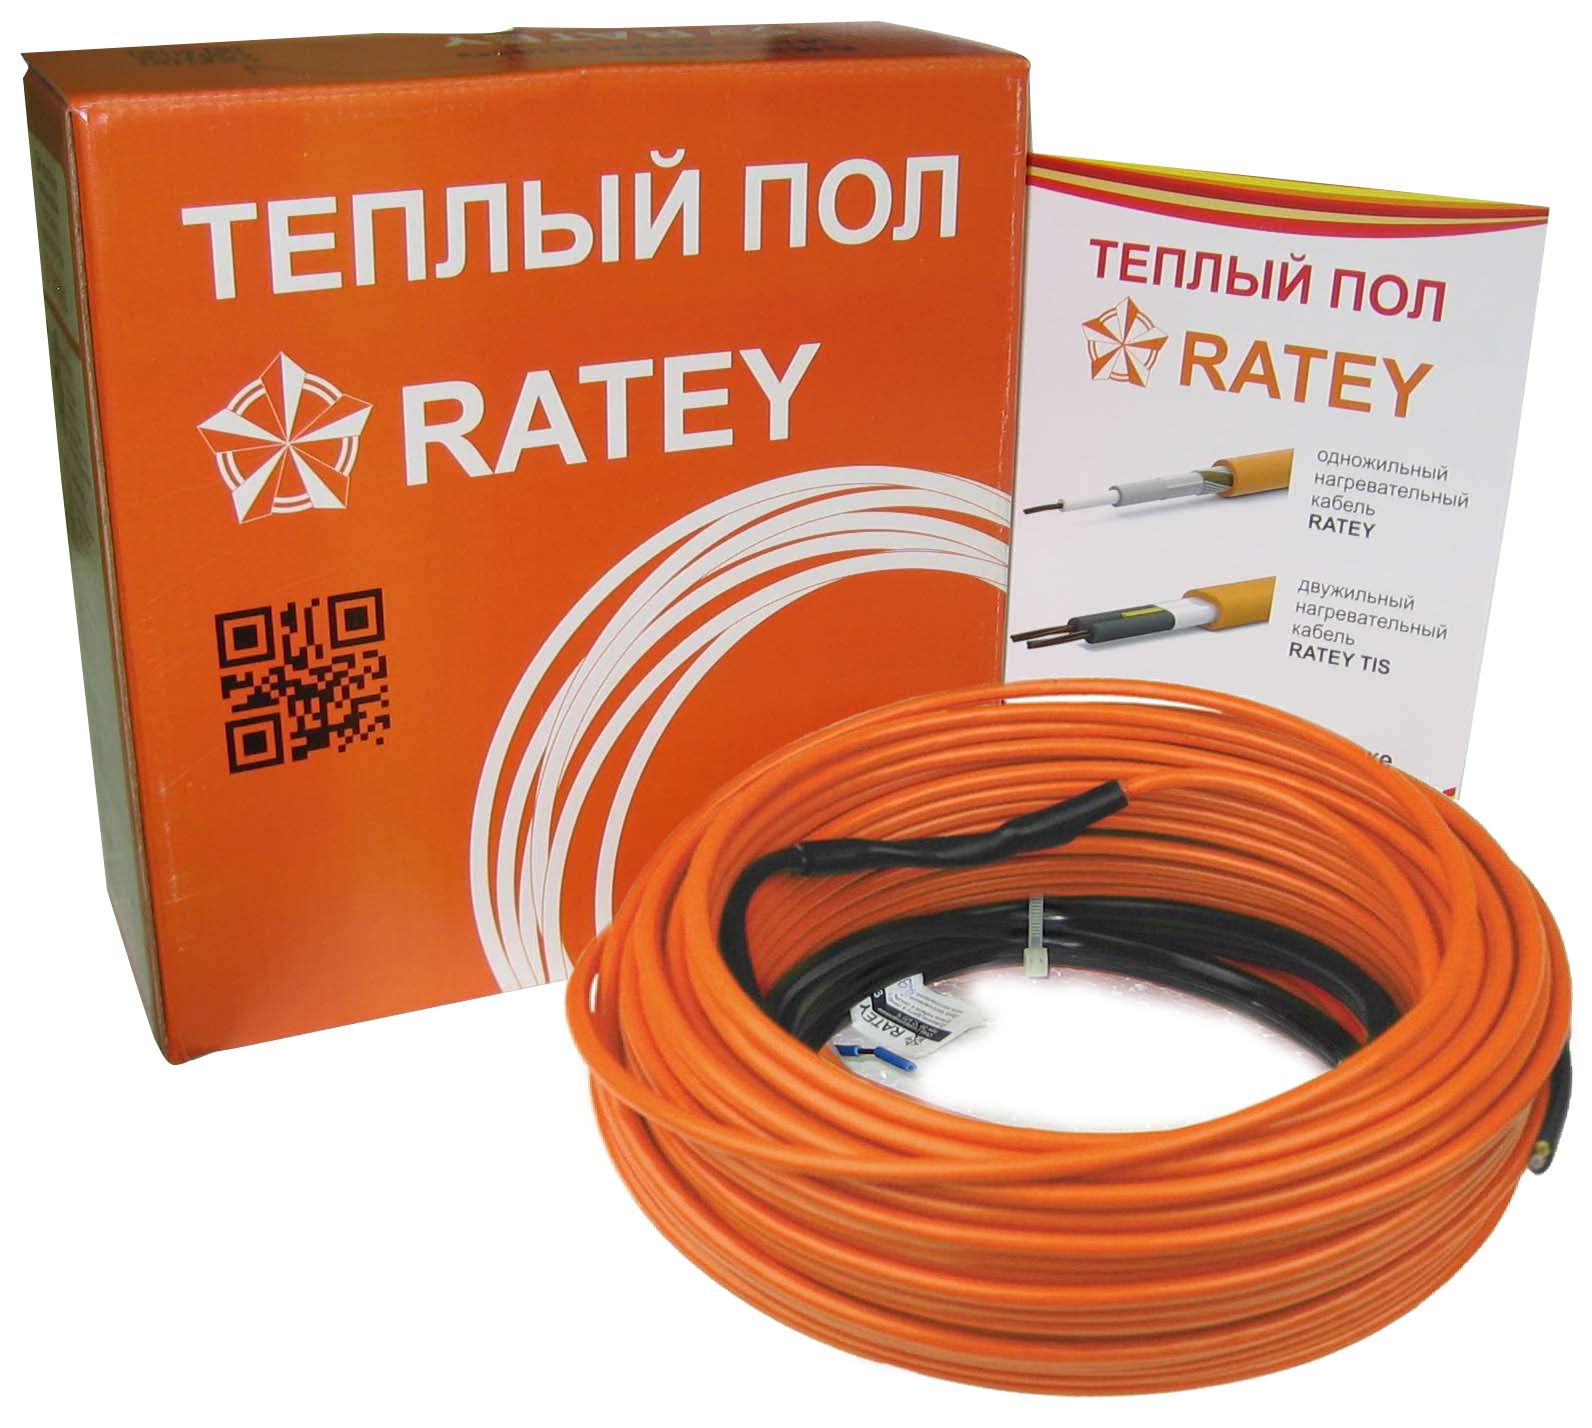 Теплый пол Ratey электрический Ratey RD1 0.670 в Киеве